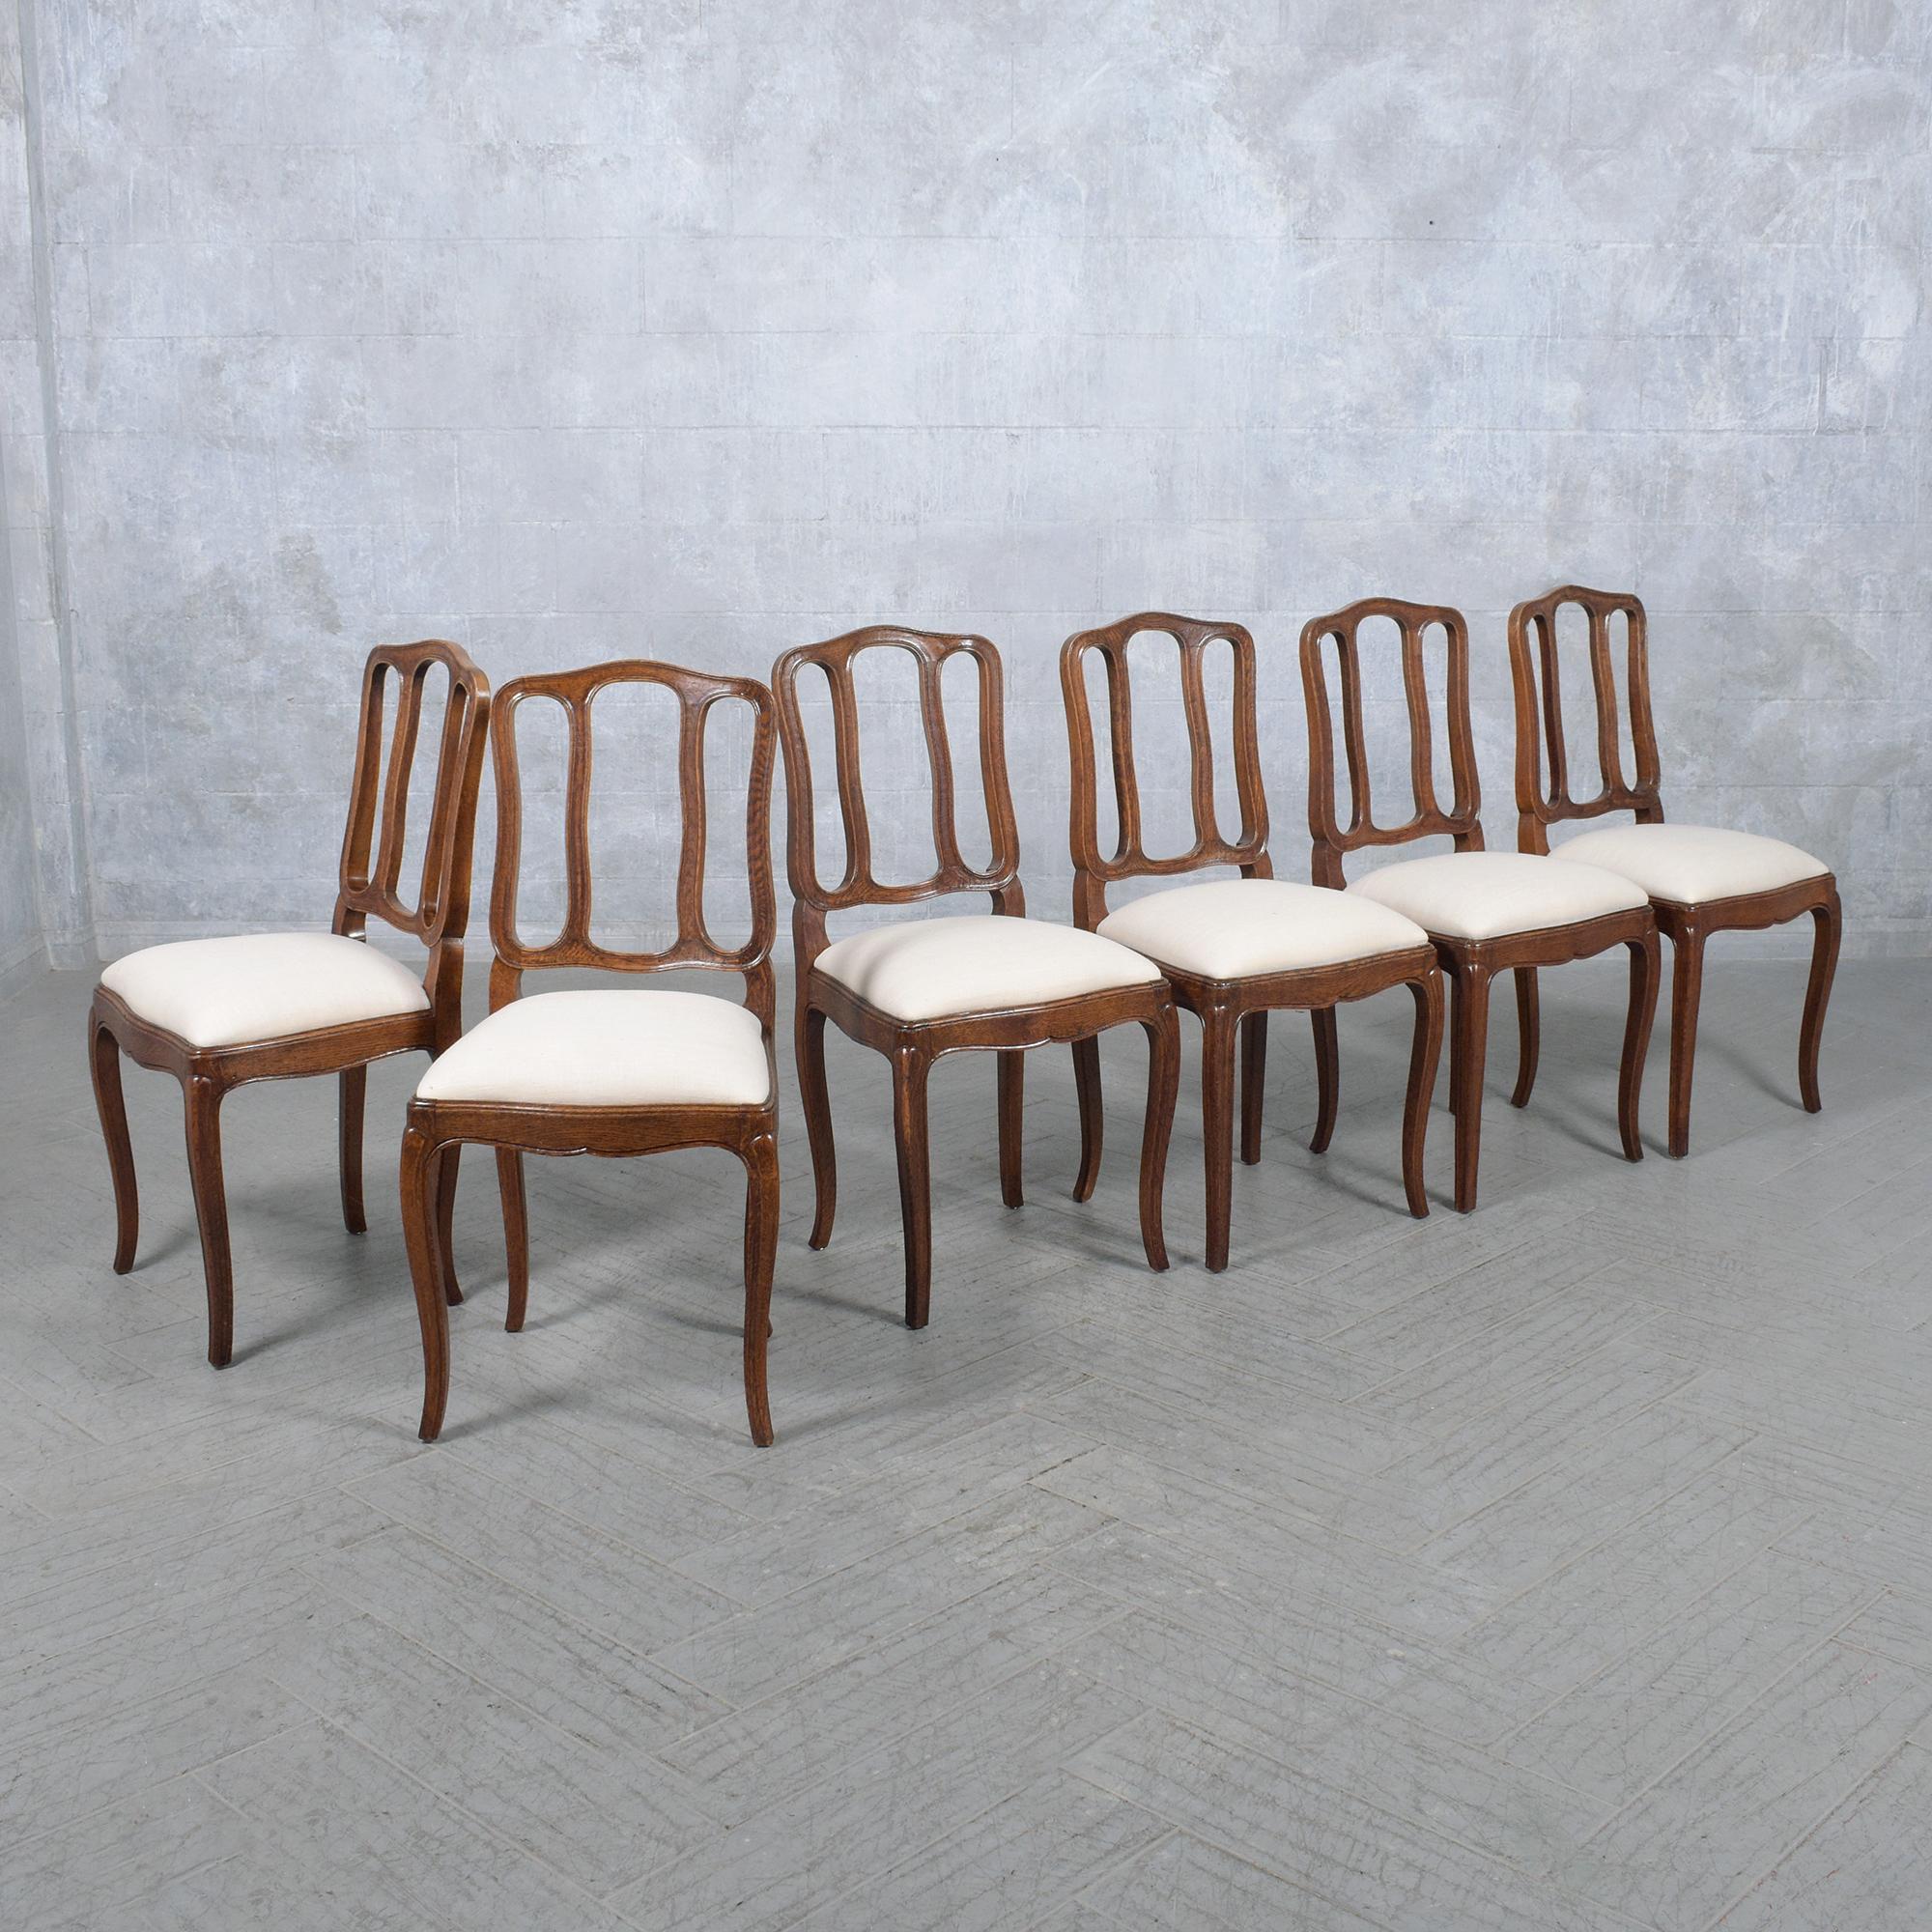 Erhöhen Sie Ihr Esserlebnis mit unserer exquisiten Kollektion von sechs antiken französischen Esszimmerstühlen, von denen jeder einen raffinierten Stil und eine sorgfältige Restaurierung verkörpert. Aus massivem Eichenholz gefertigt, wurden diese